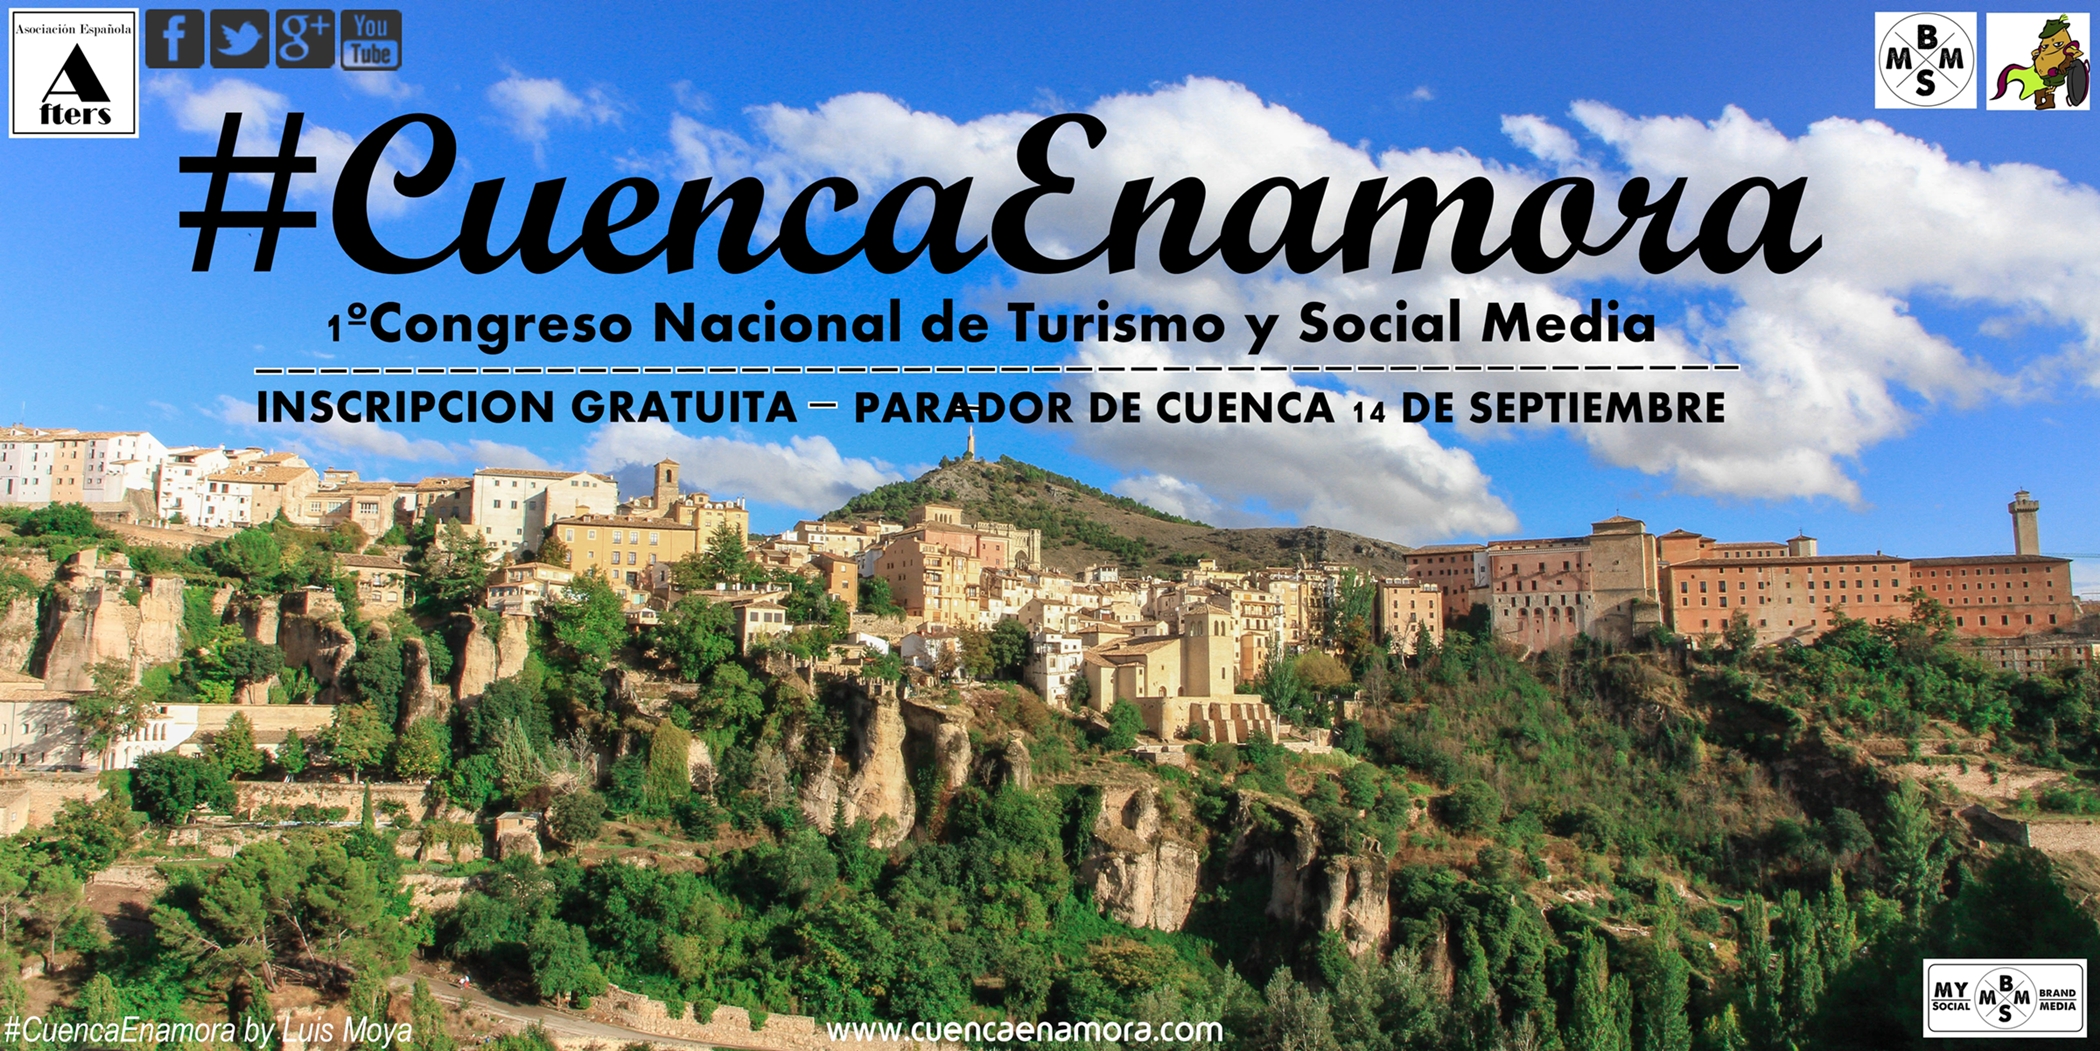 1º Congreso Nacional de Turismo y Social Media #CuencaEnamora el 14 de Septiembre, a las 11 h. en el Parador de Cuenca.